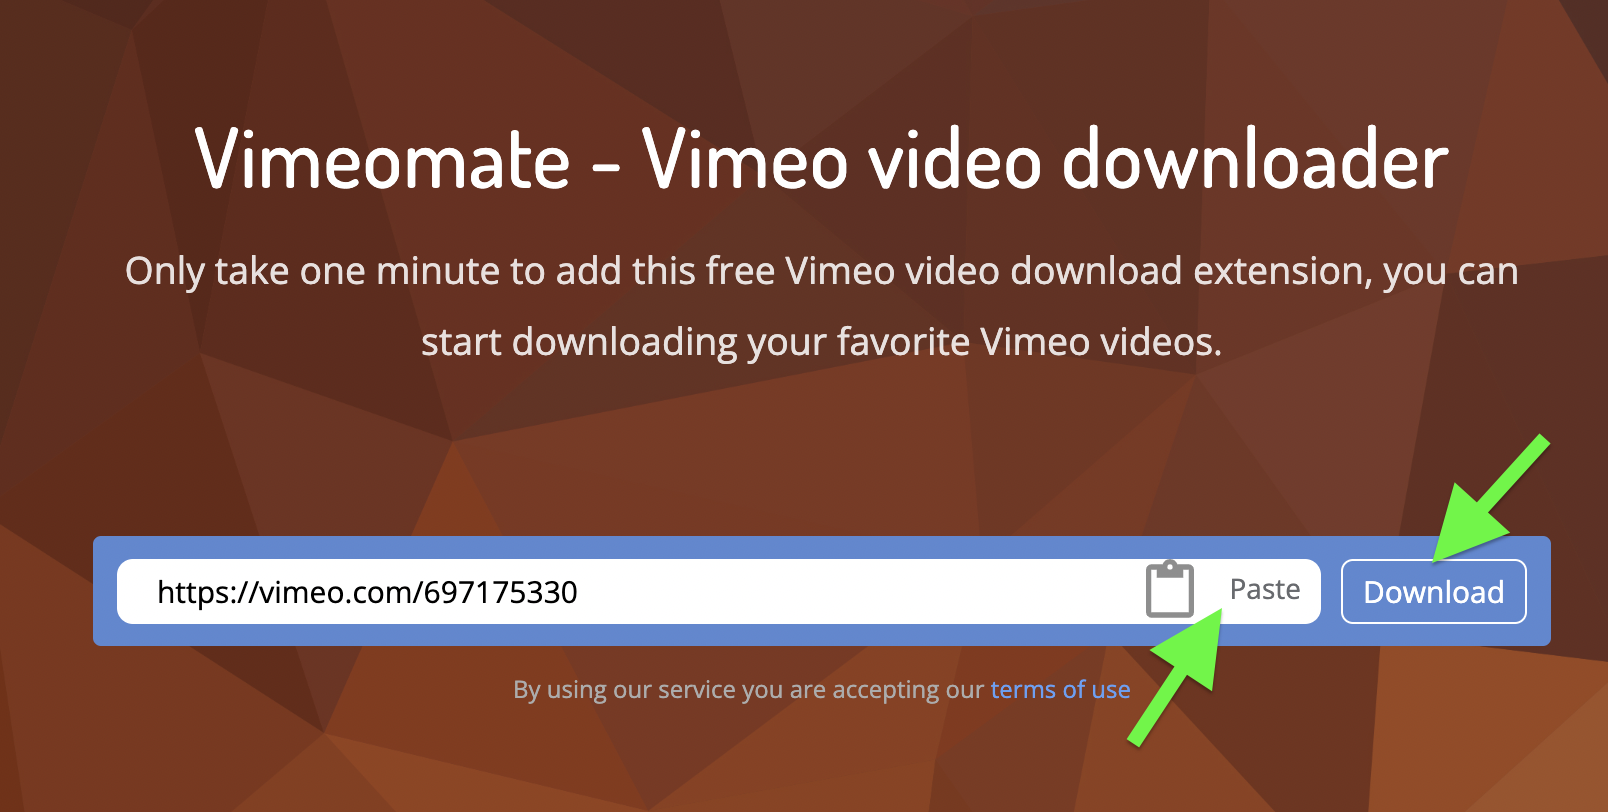 Vimeomate downloads private Videos Online